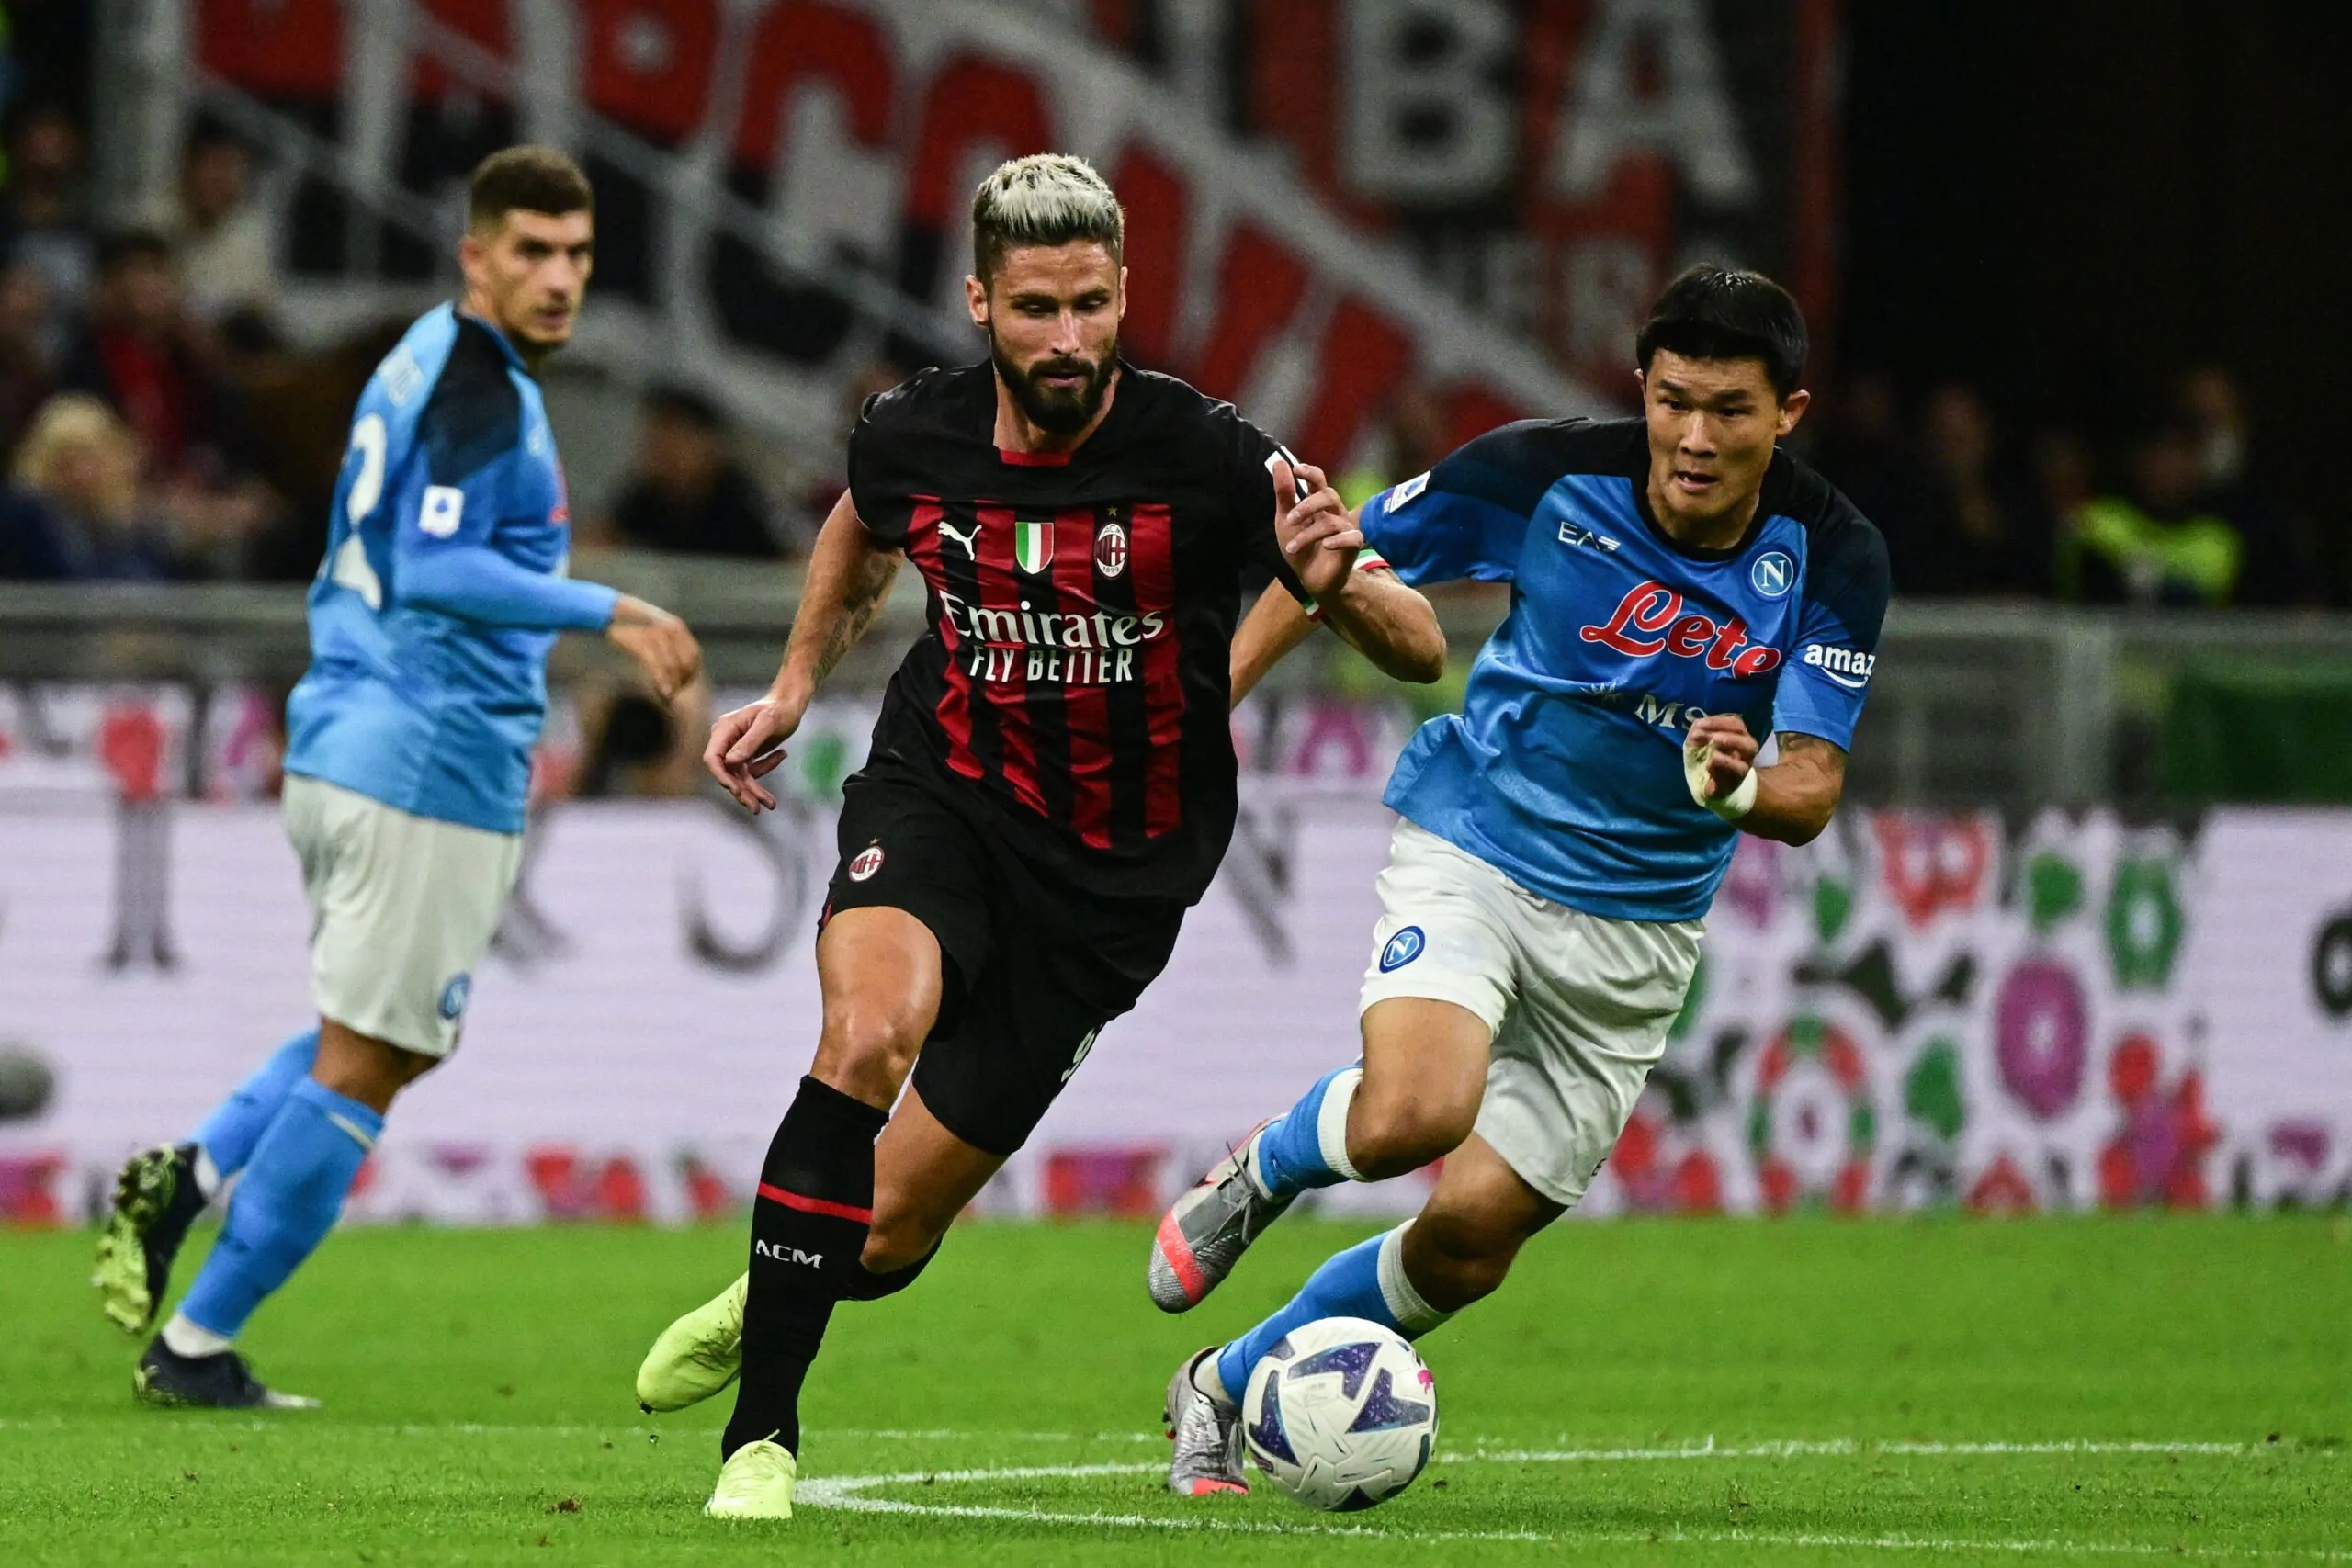 Anticipi e posticipi fino alla 29^ giornata: quando si gioca Napoli-Milan